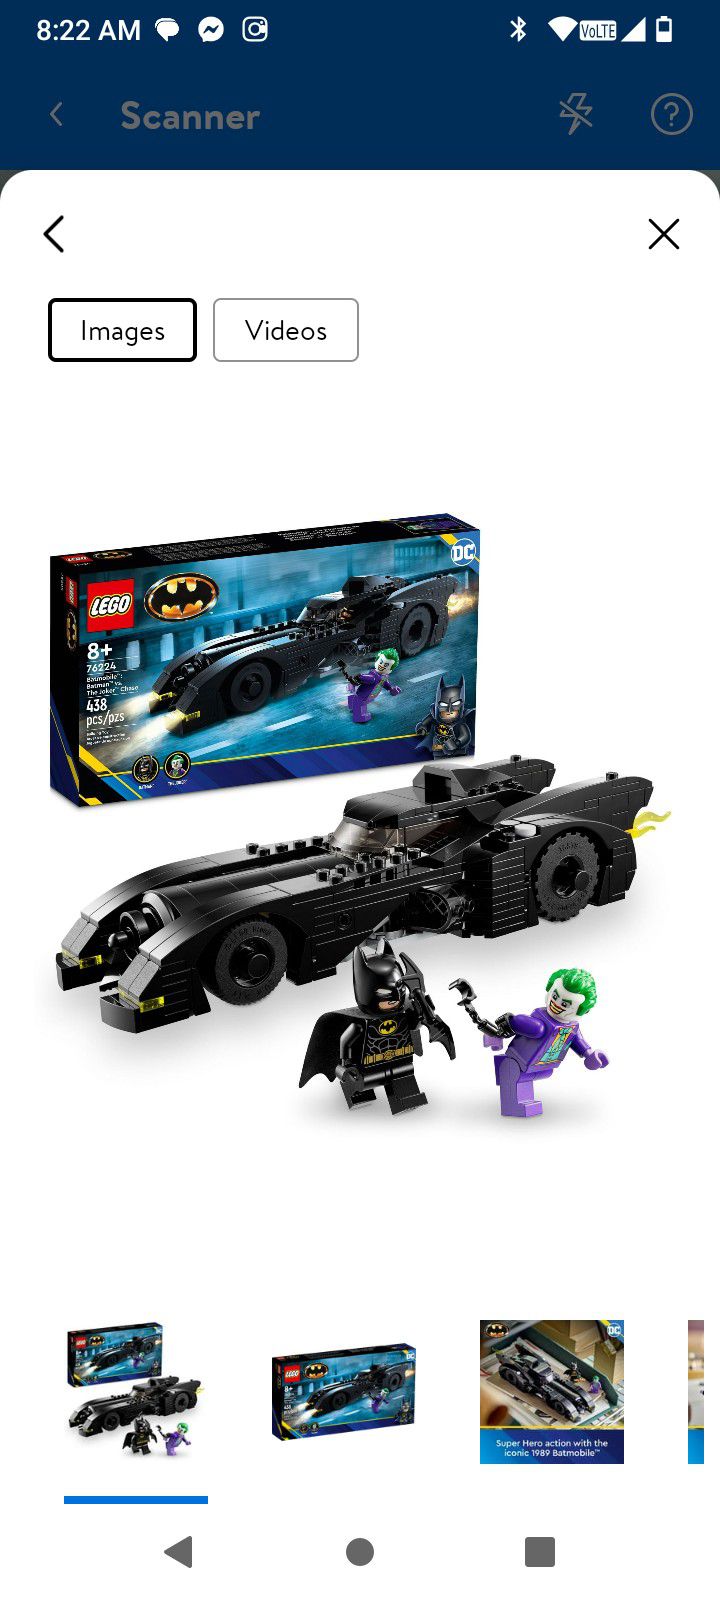 Batman Batmobile Lego Set